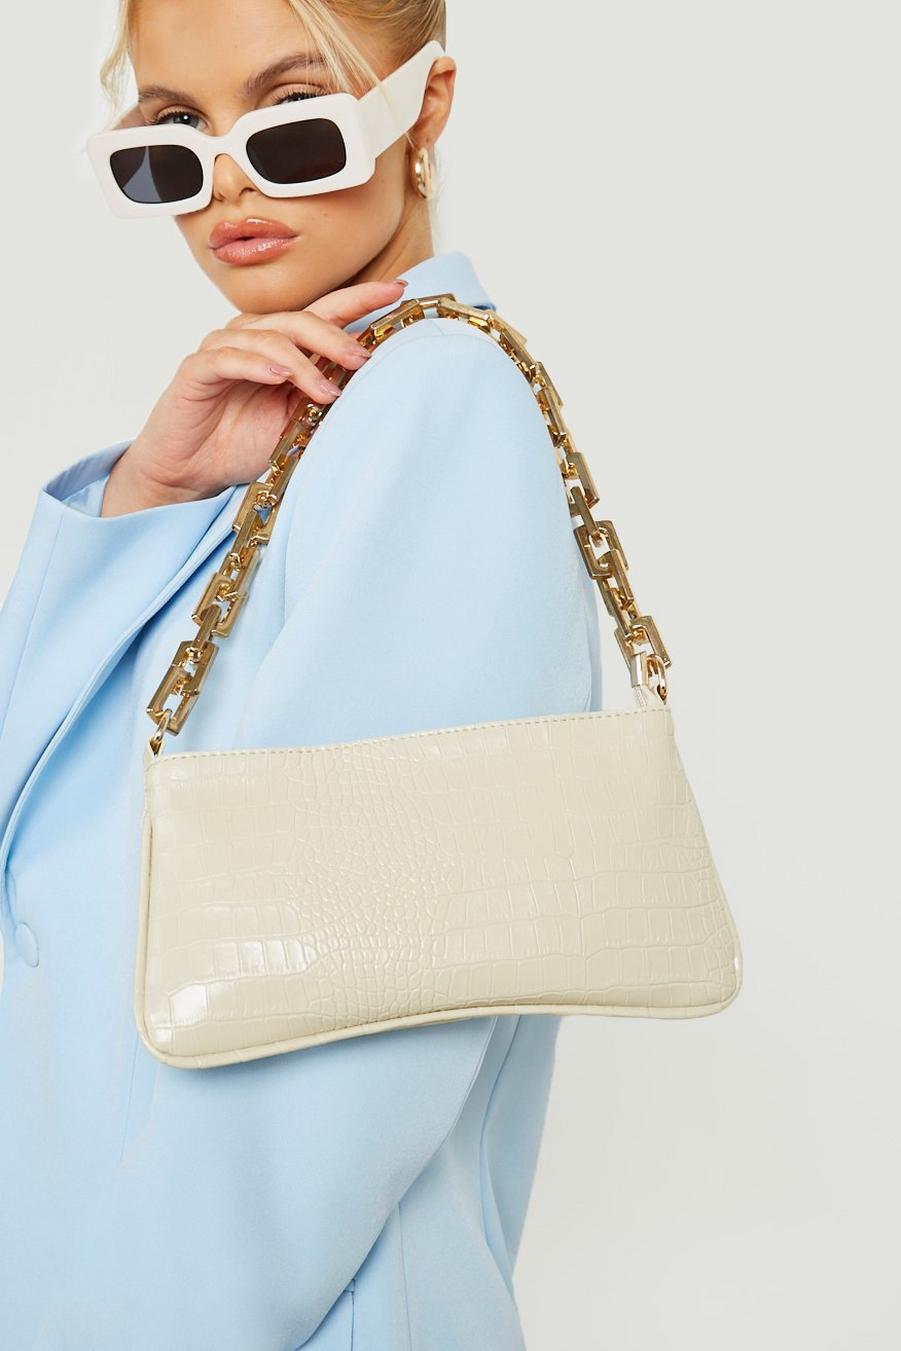 Cream white Handväska med krokodilskinnseffekt och guldig kedja